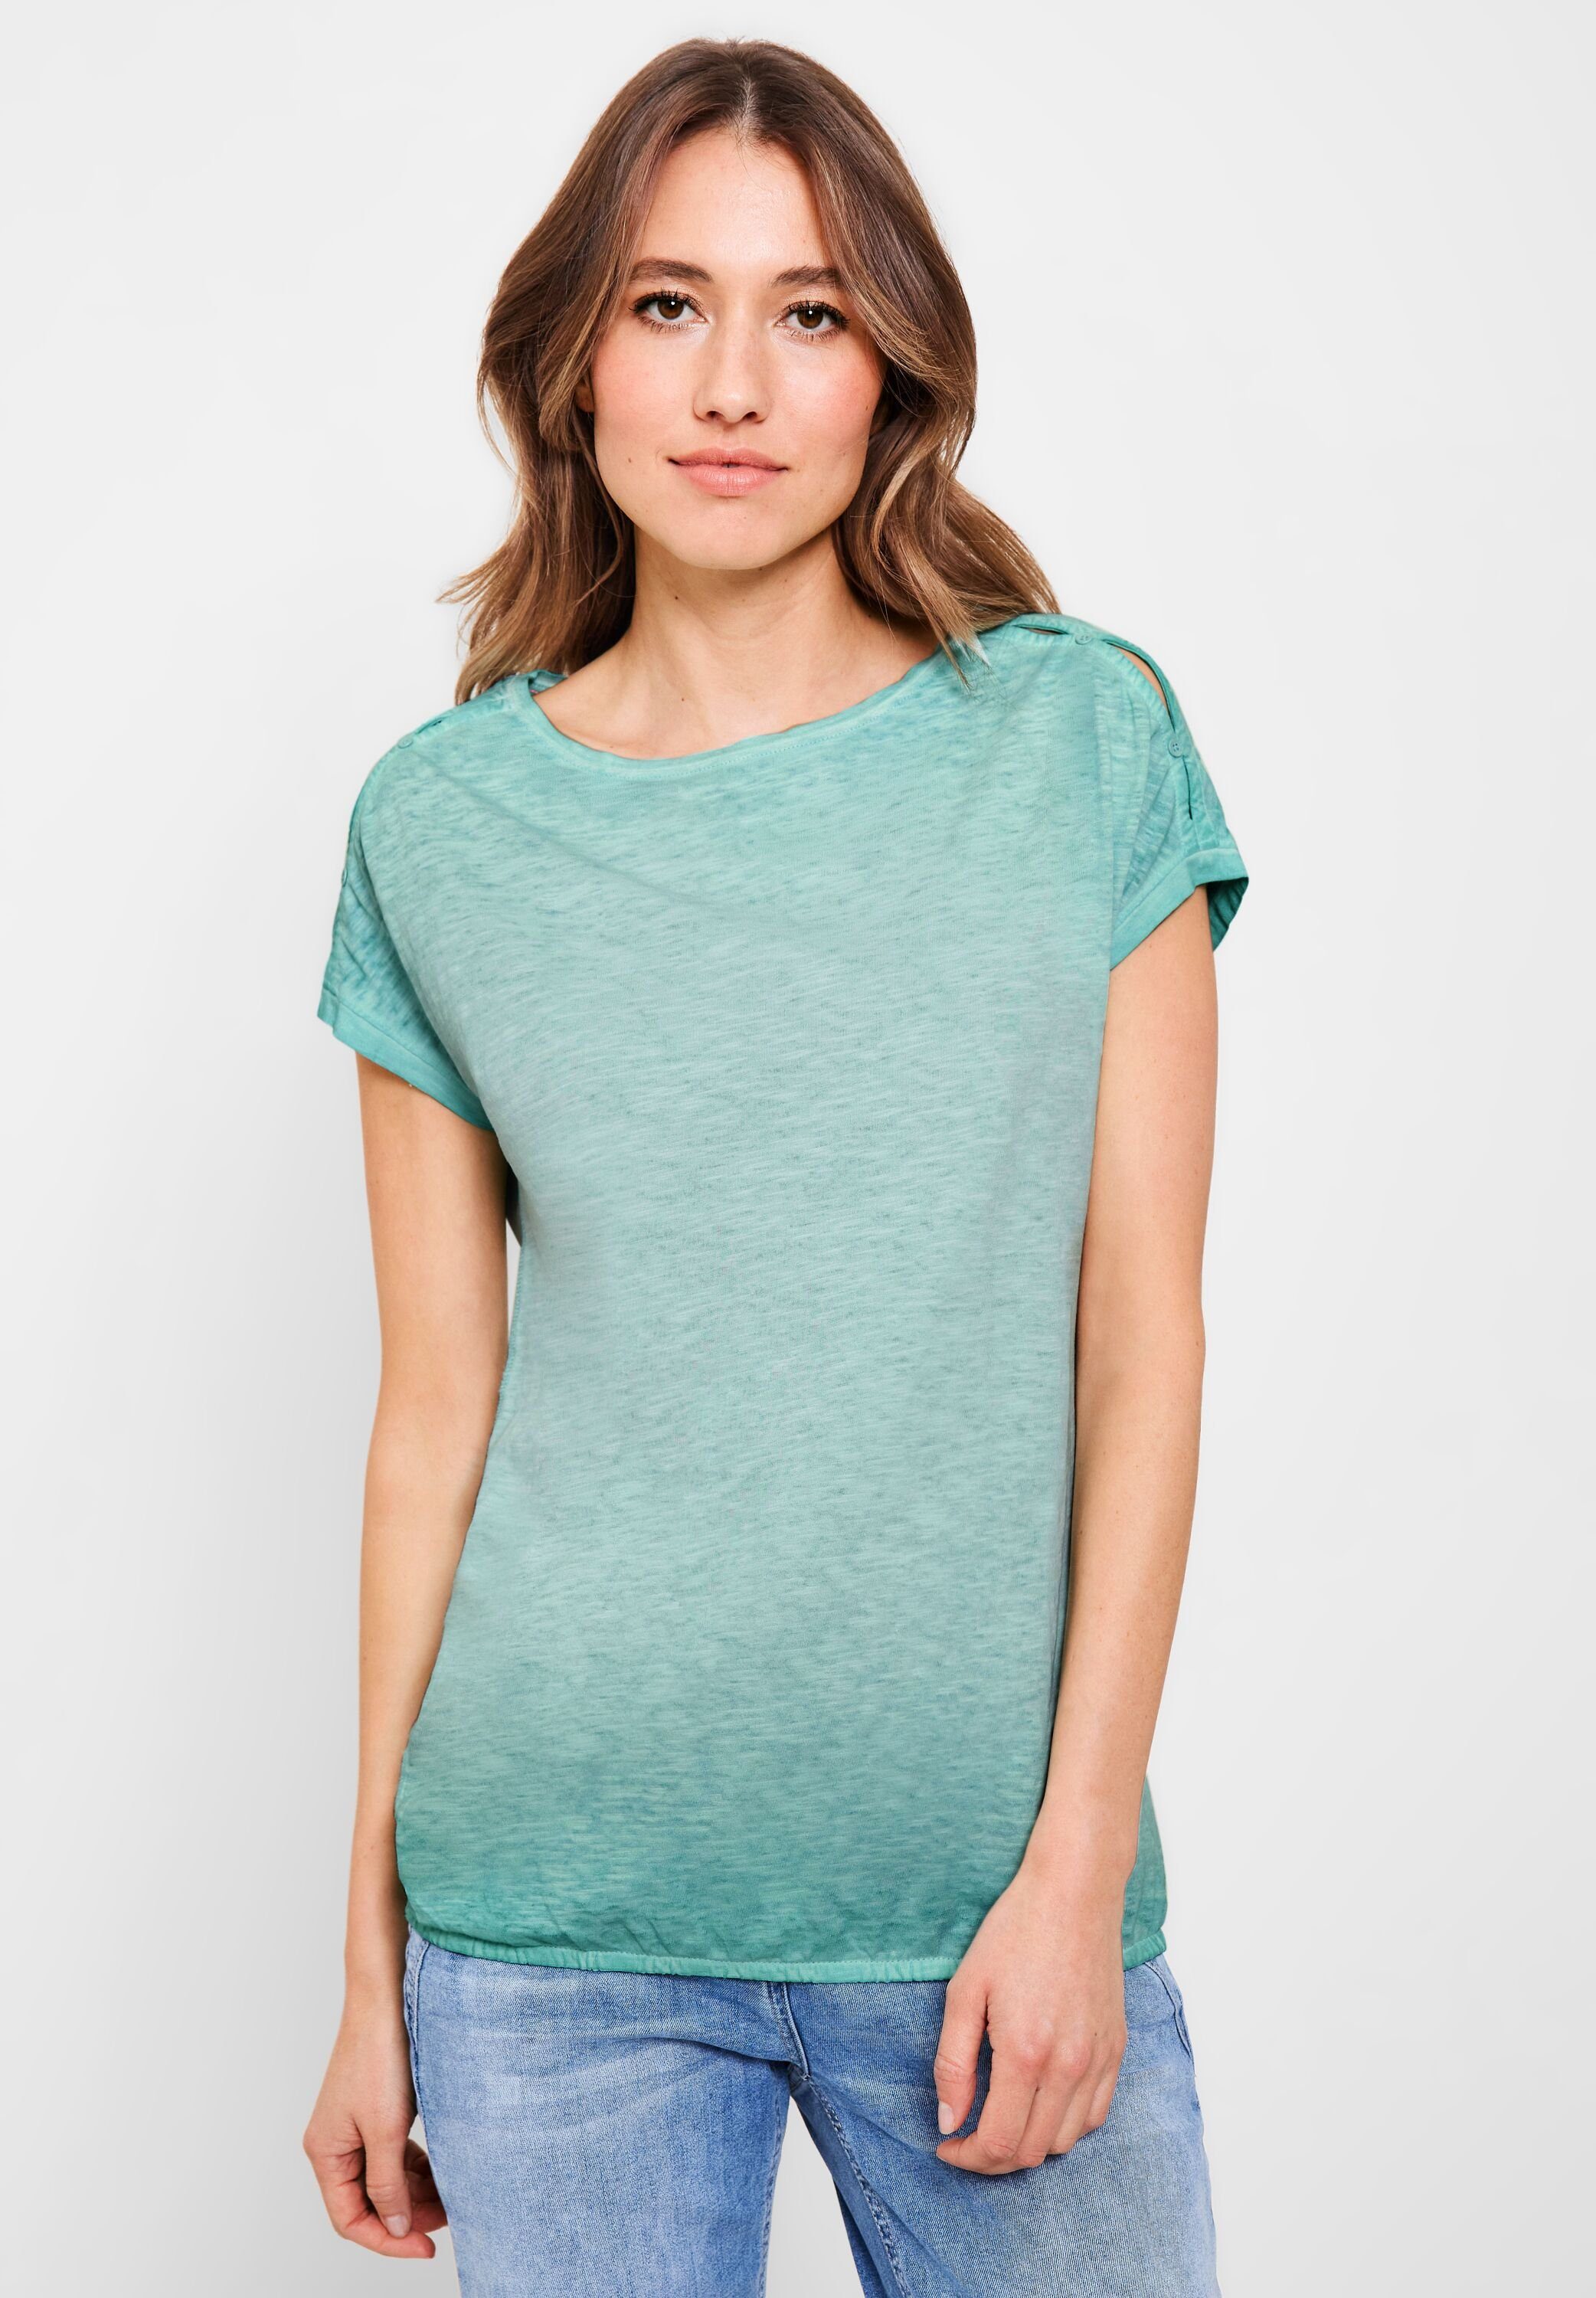 Beliebte Produkte sind Cecil T-Shirt mit cool mint green Flammgarn